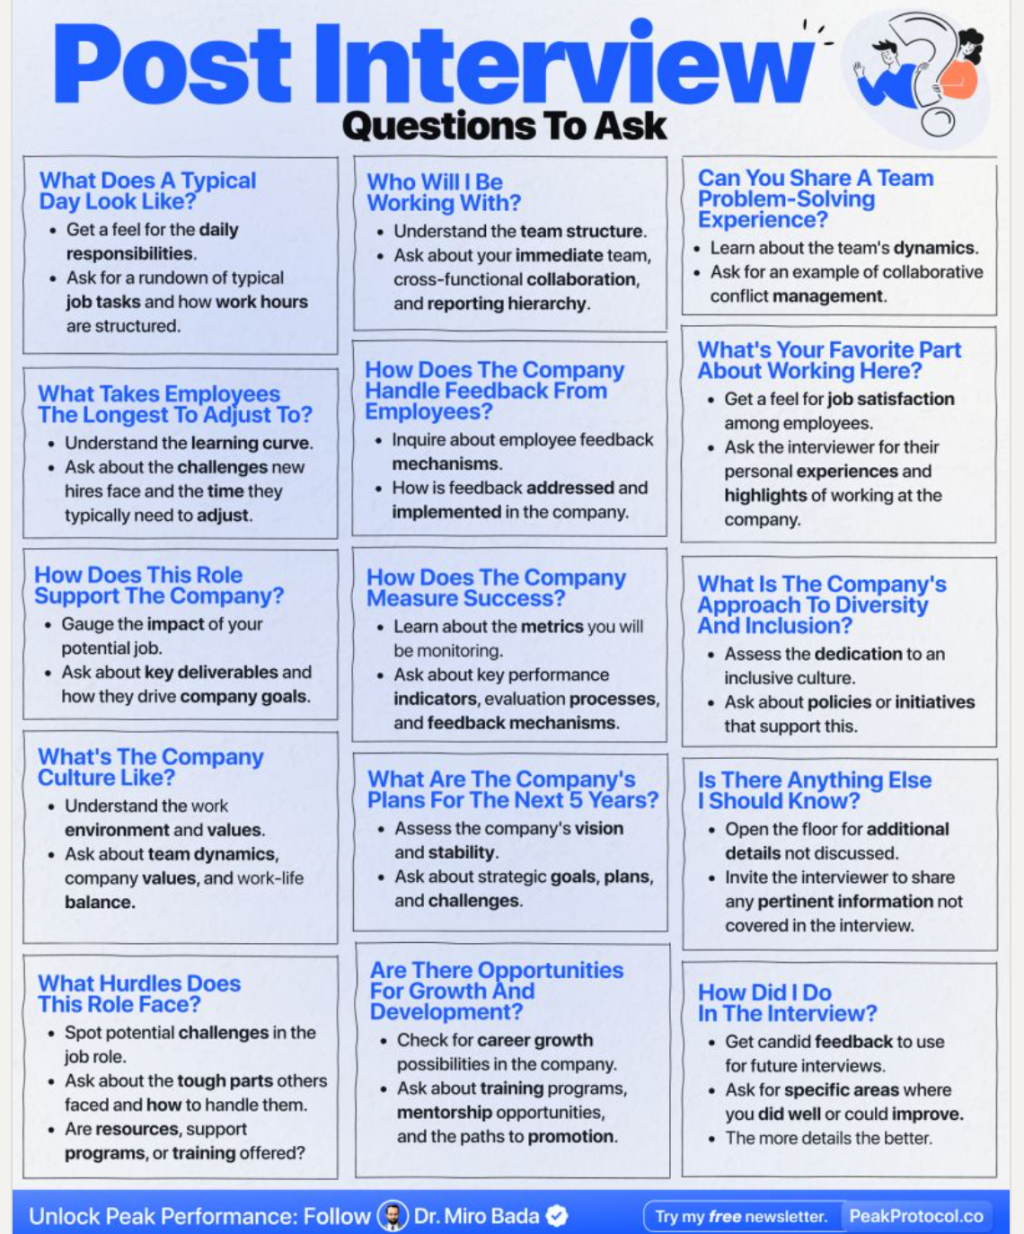 Questions you should ask at a job interview